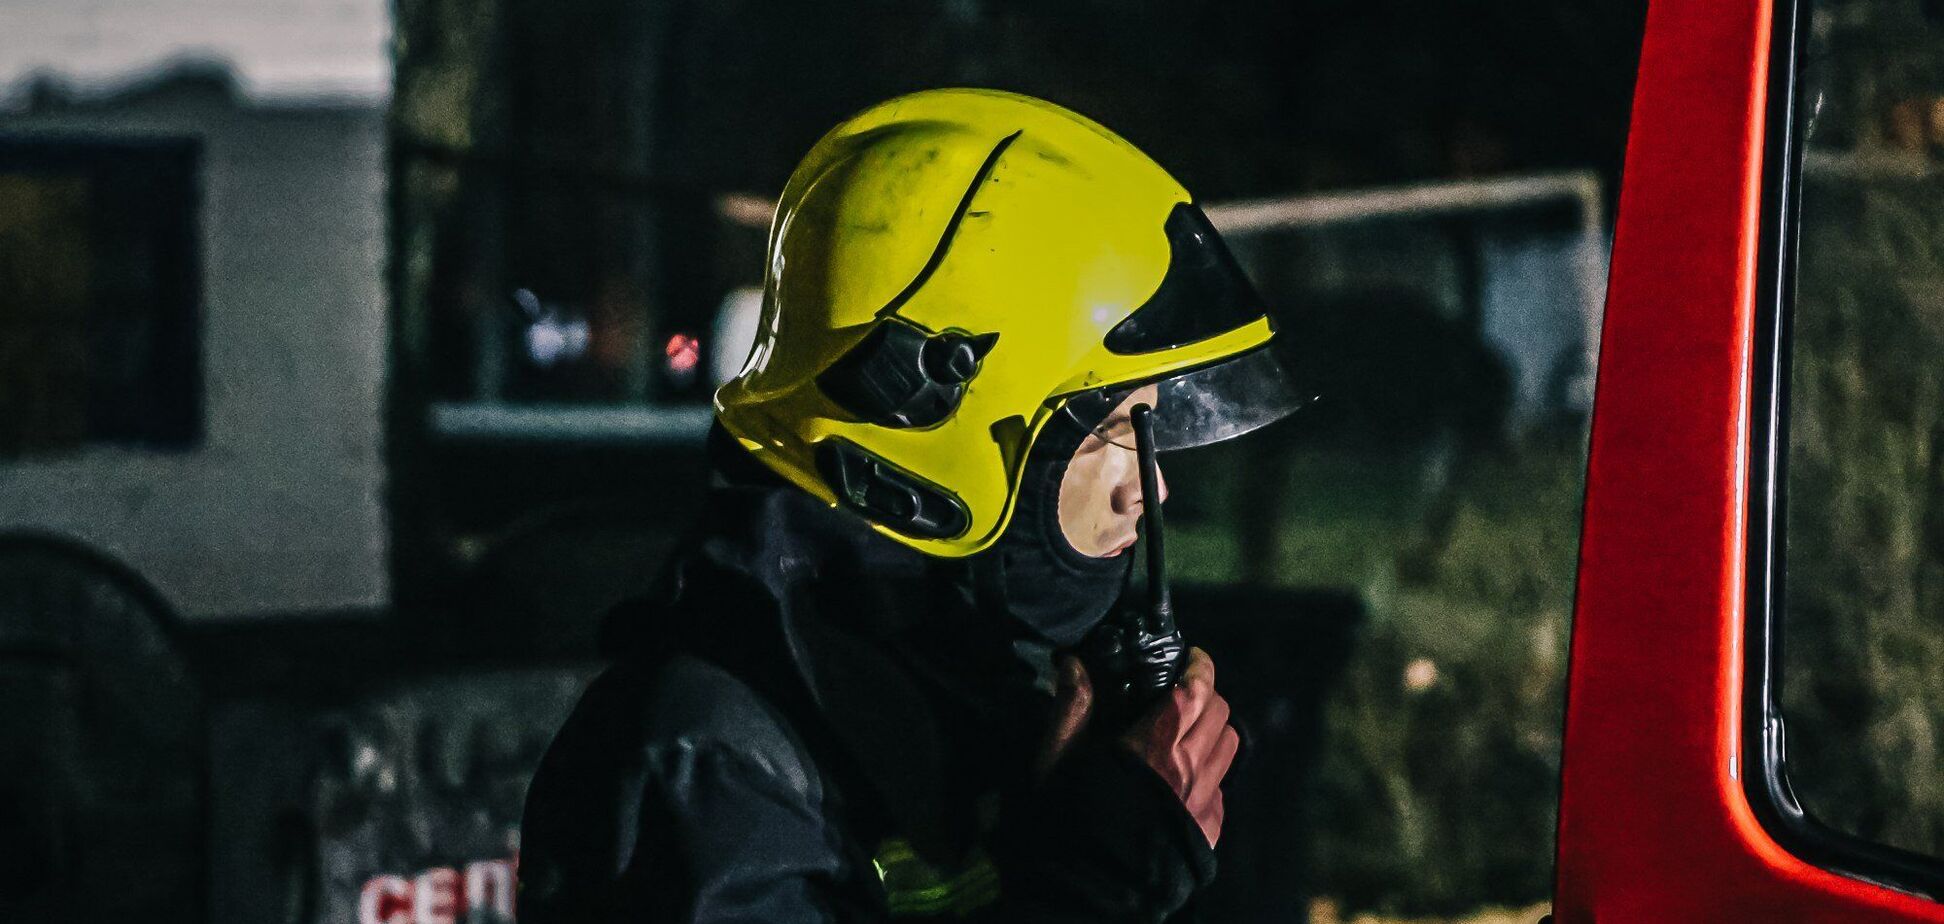 Во время тушения пожара спасатели нашли тело мужчины